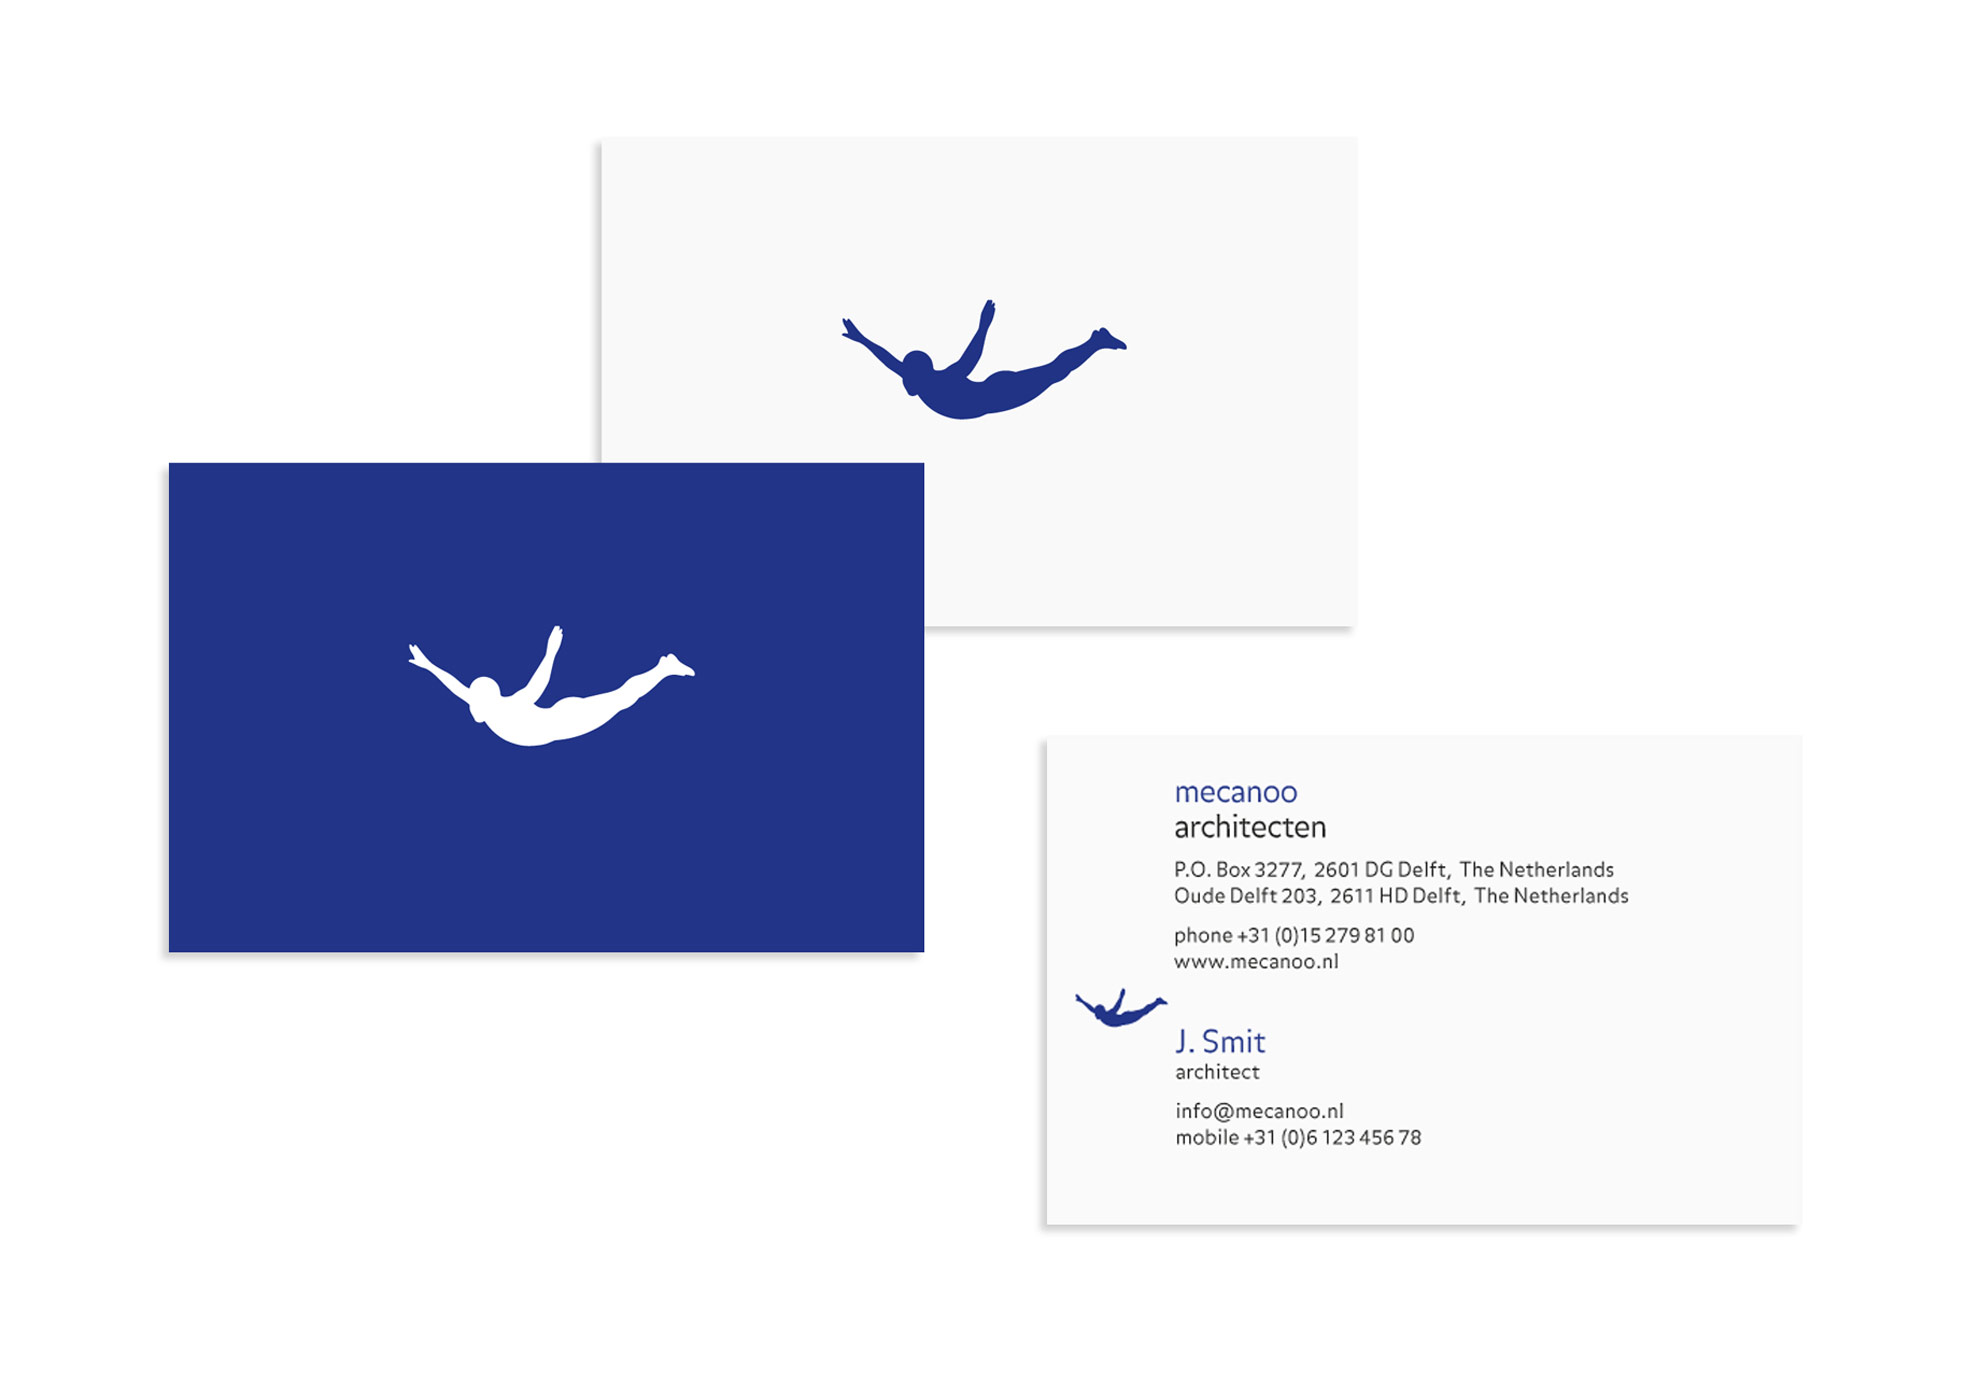 mecanoo, businesscard, identity design